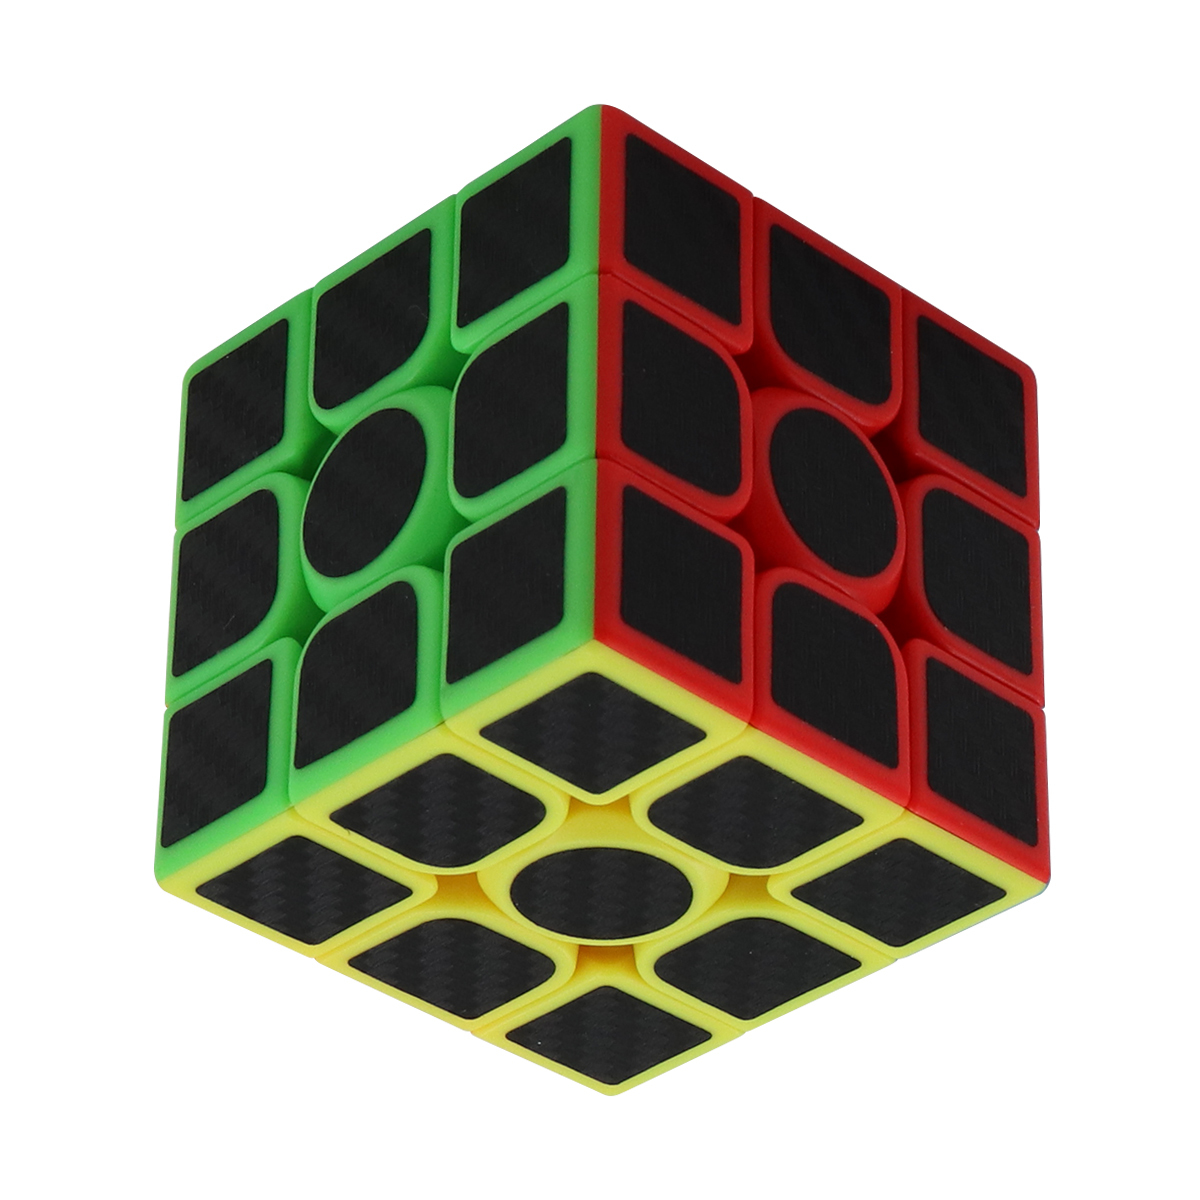 ルービックキューブ マジックキューブ 競技用 3x3 魔方 立体パズル 知育玩具 3x3_画像6